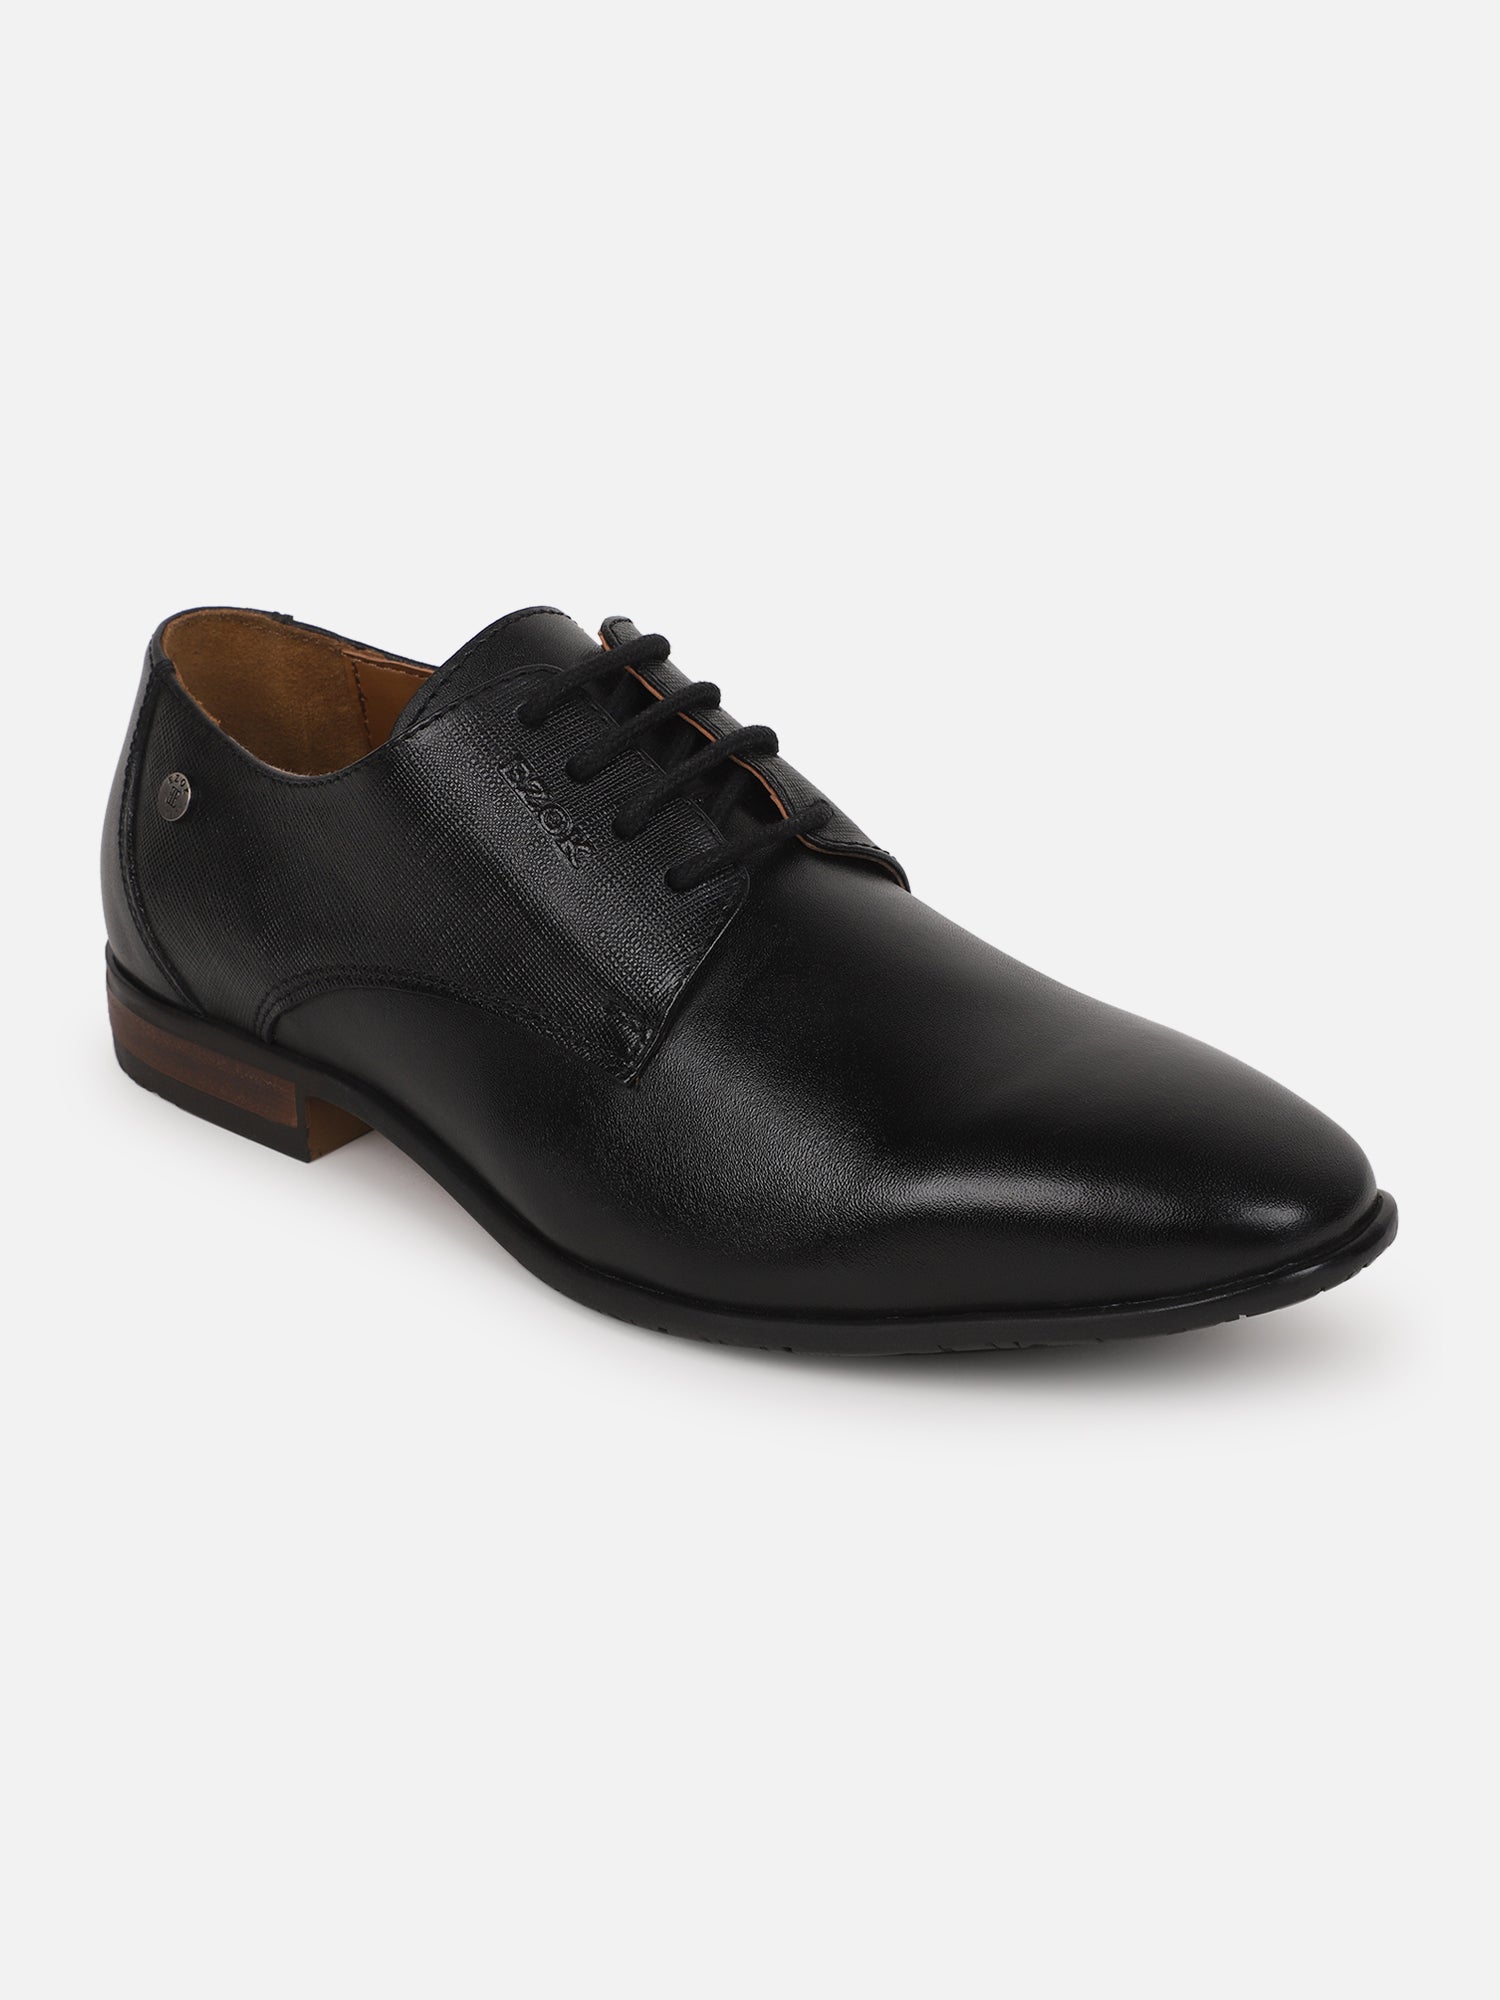 LOOKKS Men Black Formal Shoe 655 Size 6 Slip On Sneakers For Men - Buy  LOOKKS Men Black Formal Shoe 655 Size 6 Slip On Sneakers For Men Online at  Best Price -